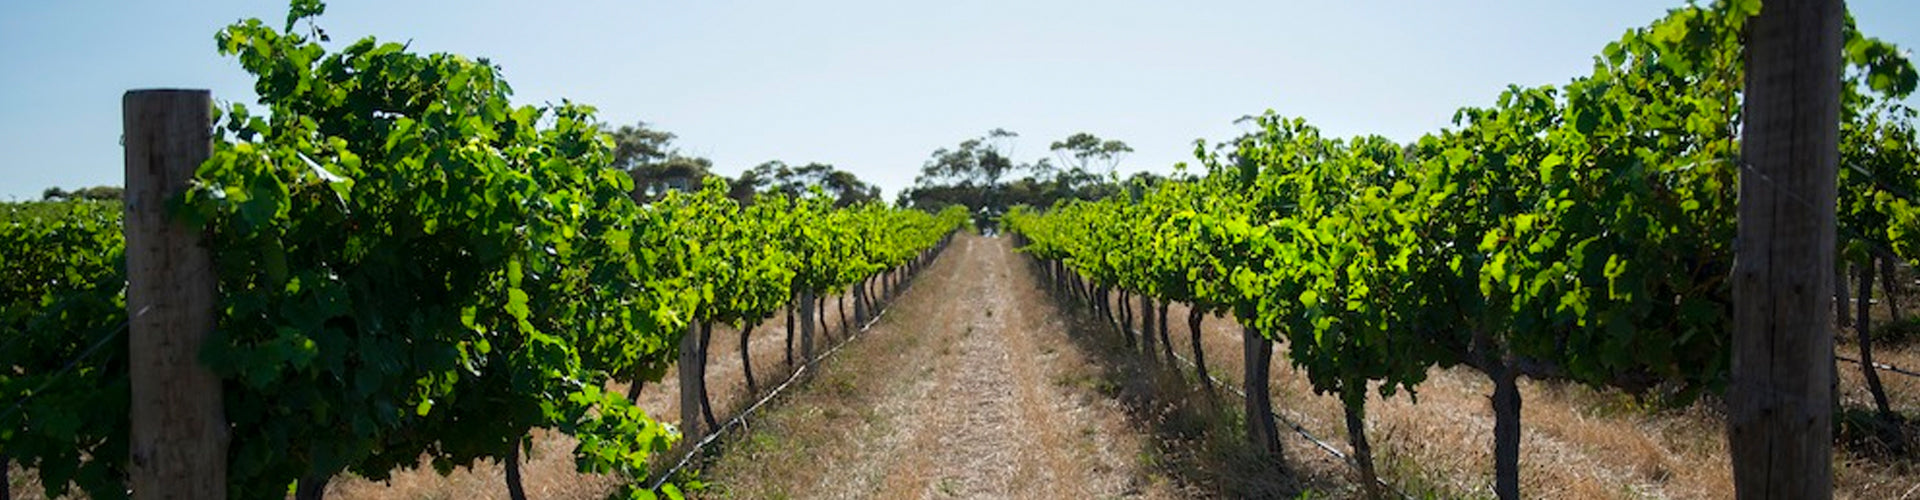 Dandelion Vineyards in Eden Valley, South Australia